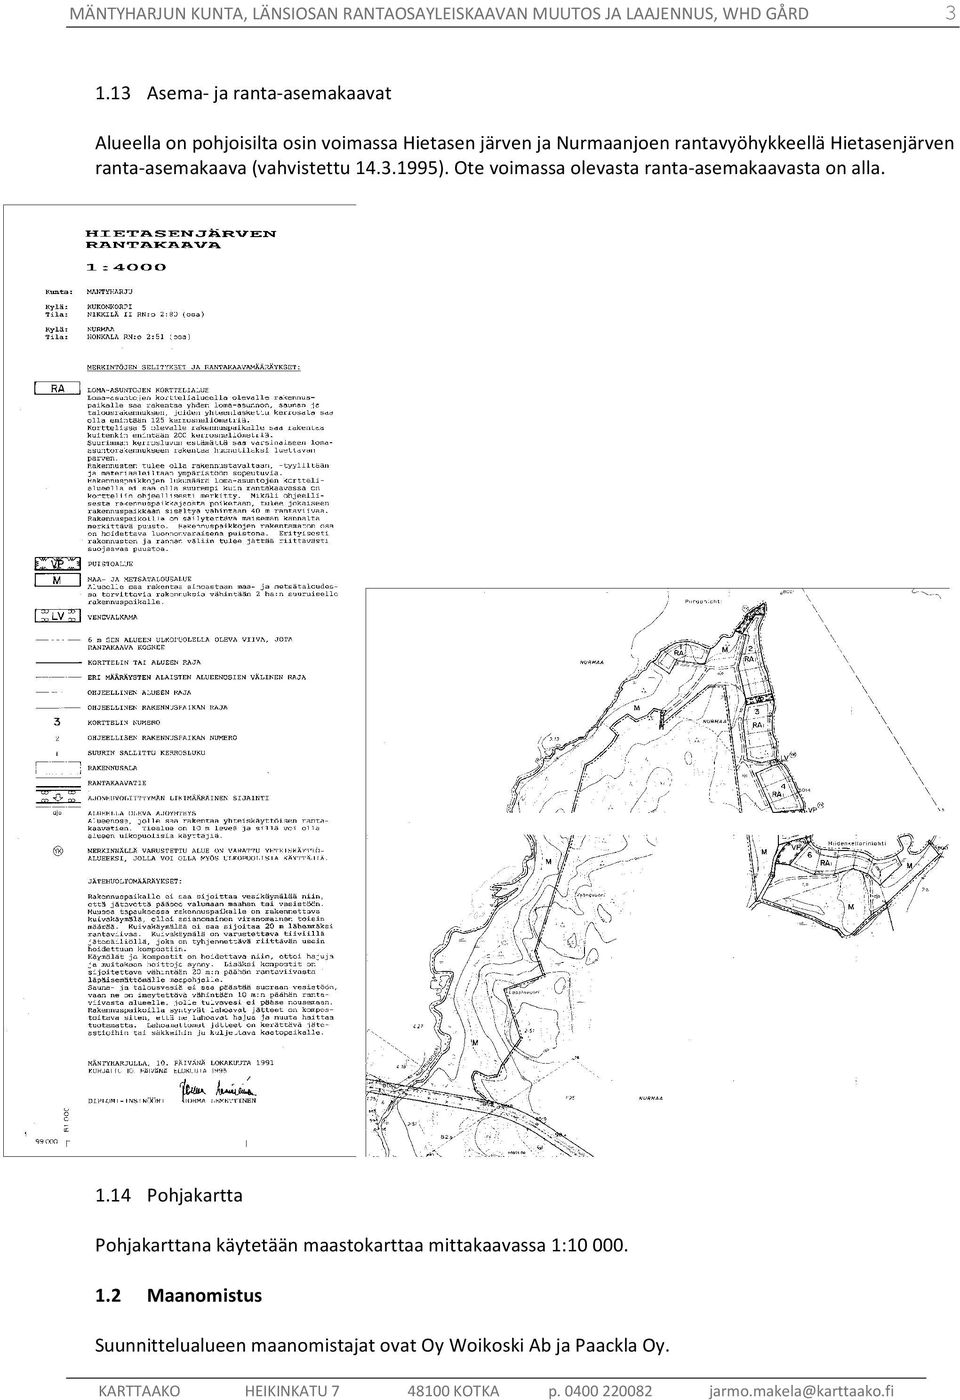 ranta-asemakaava (vahvistettu 14.3.1995). Ote voimassa olevasta ranta-asemakaavasta on alla. 1.14 Pohjakartta Pohjakarttana käytetään maastokarttaa mittakaavassa 1:10000.